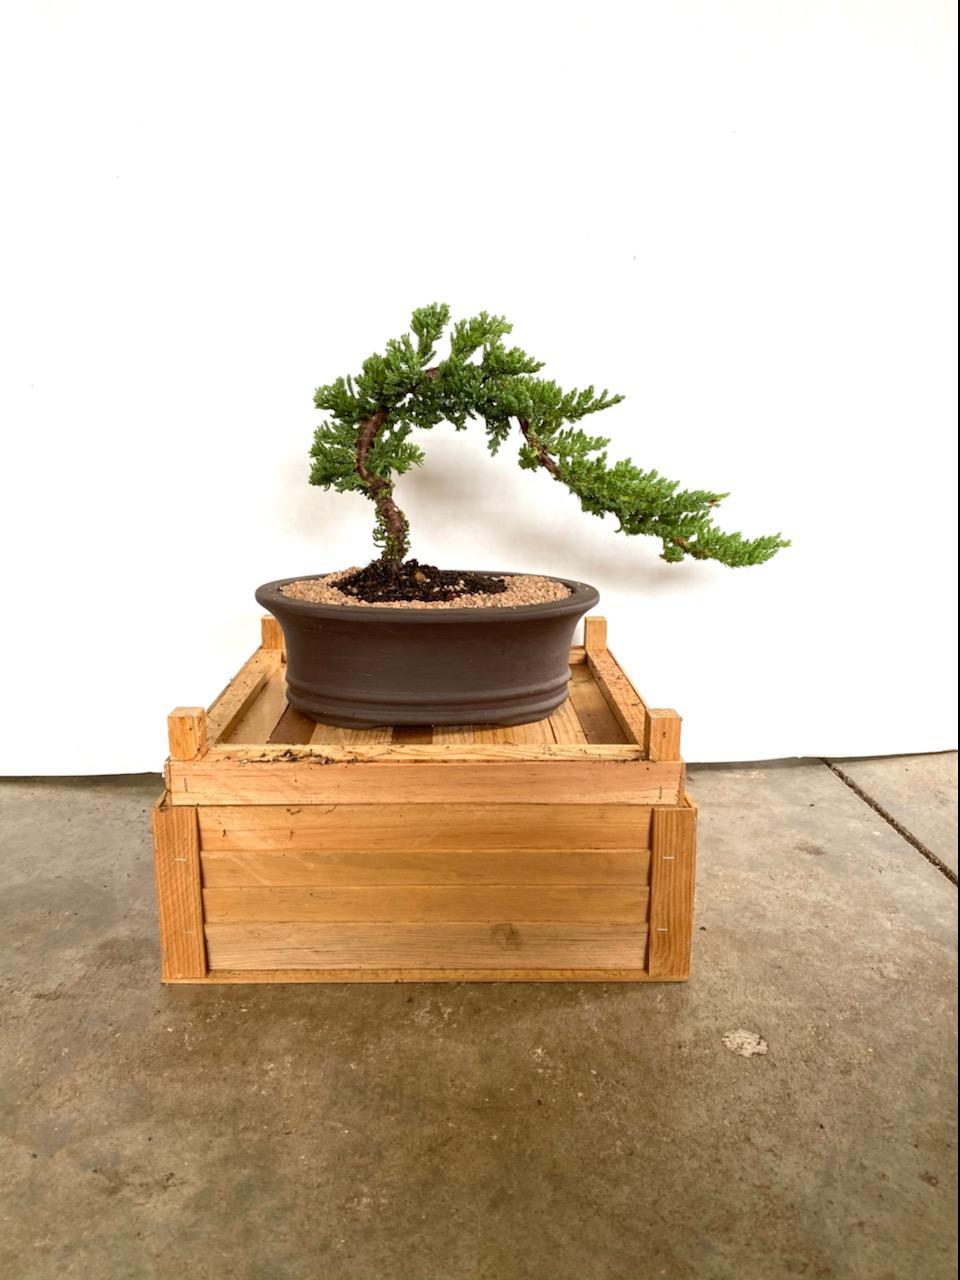 Beginner traditional Juniper bonsai tree